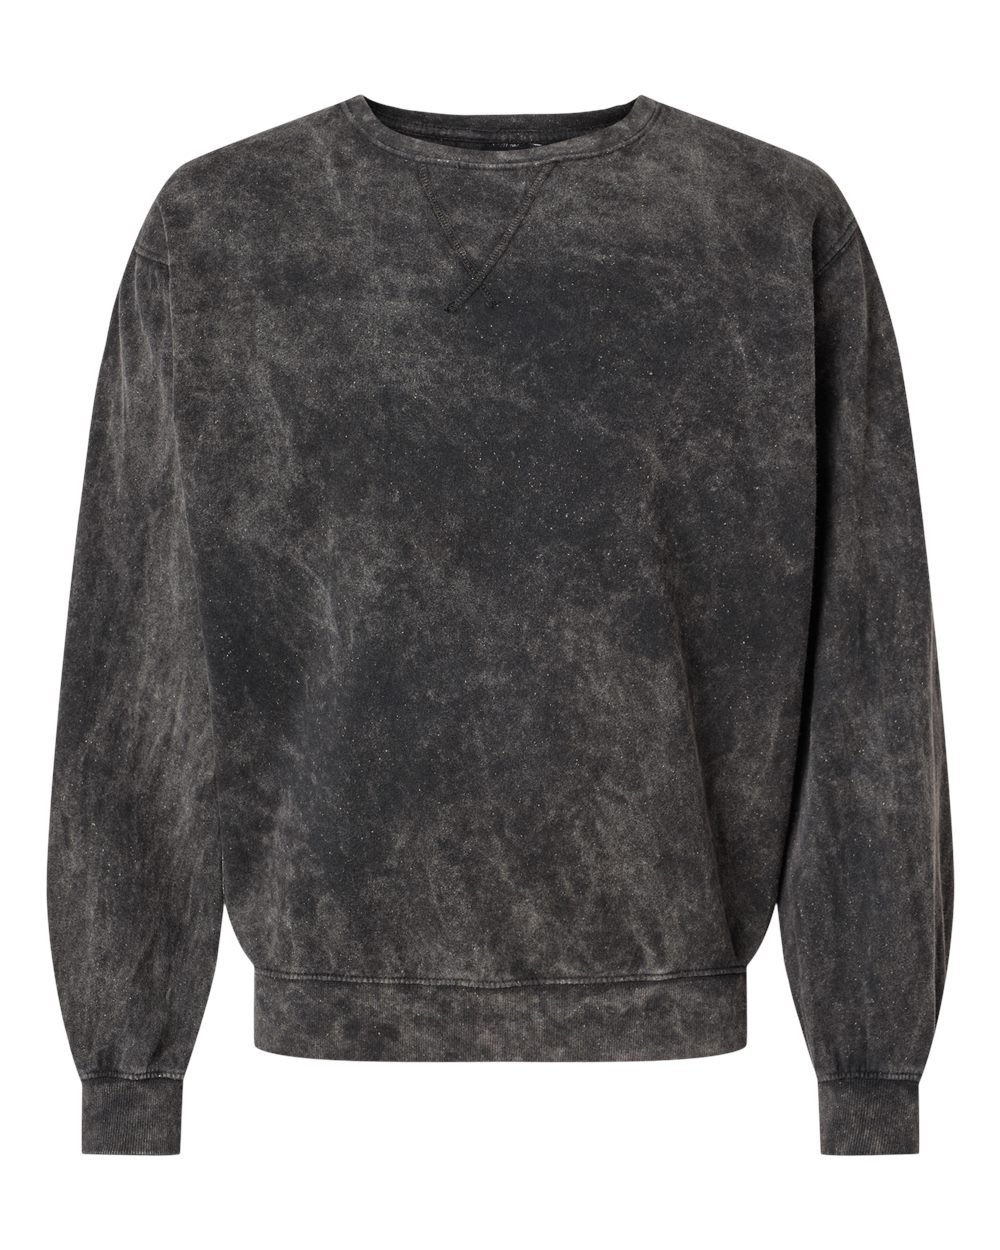 Dyenomite 845MW - Premium Fleece Mineral Wash Crewneck Sweatshirt